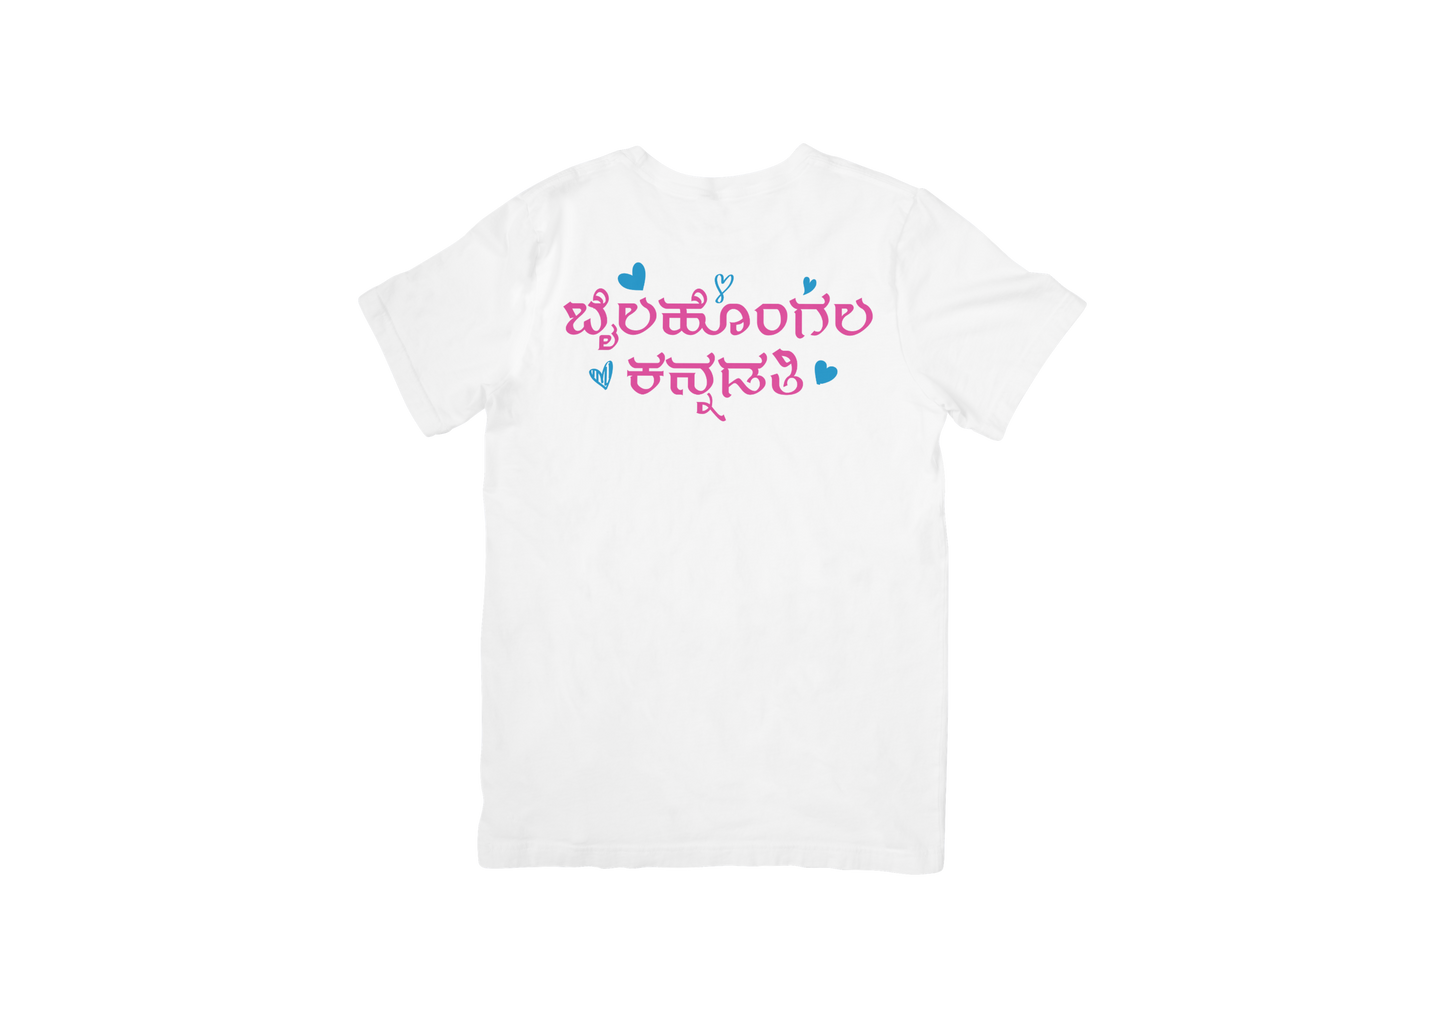 Bailhongal kannadathi Round neck T-shirt